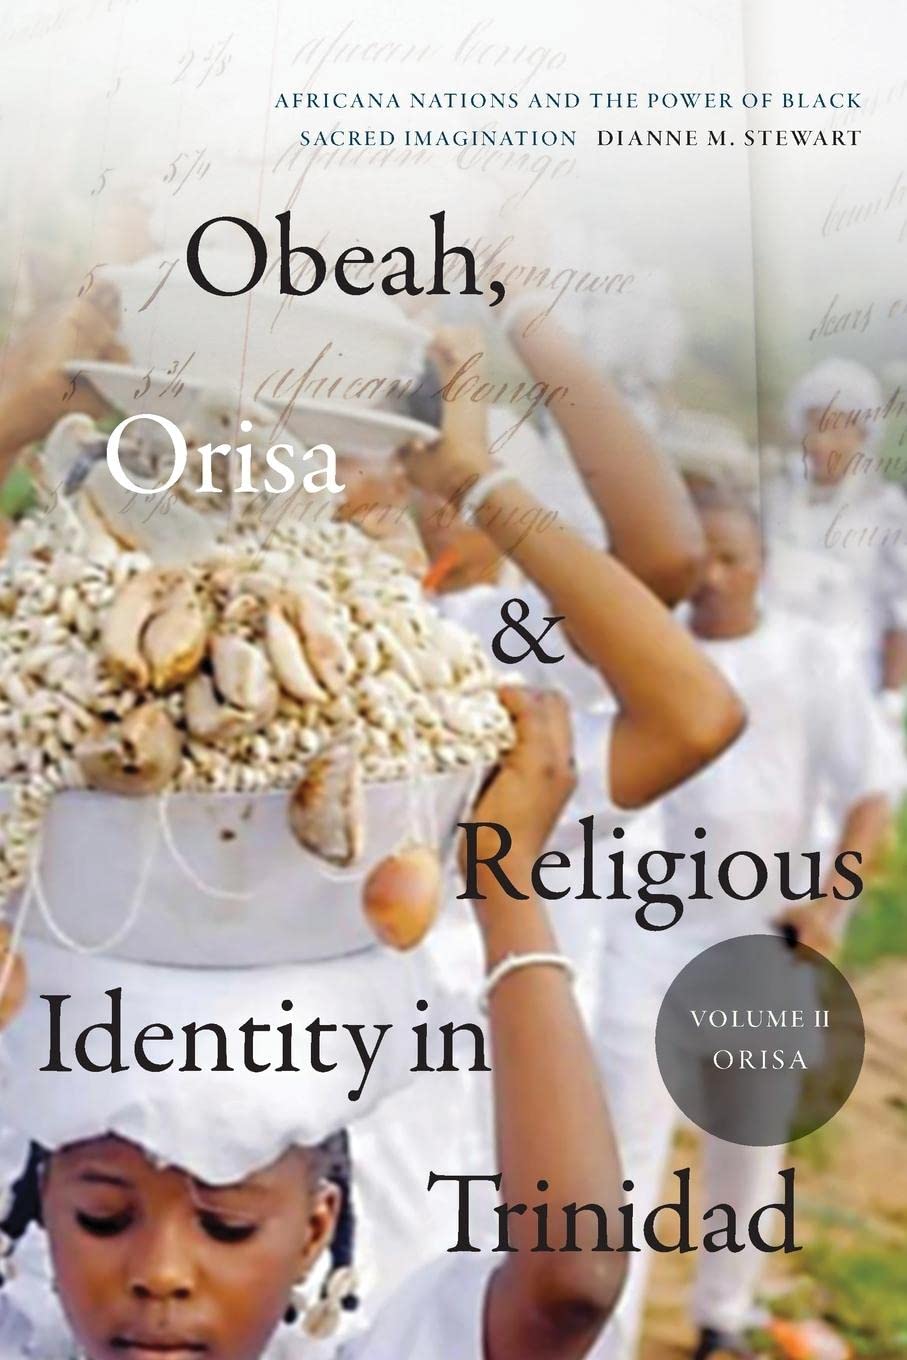 Libri Dianne M. Stewart - Obeah, Orisa, And Religious Identity In Trinidad, Volume Ii, Orisa NUOVO SIGILLATO, EDIZIONE DEL 27/09/2022 SUBITO DISPONIBILE